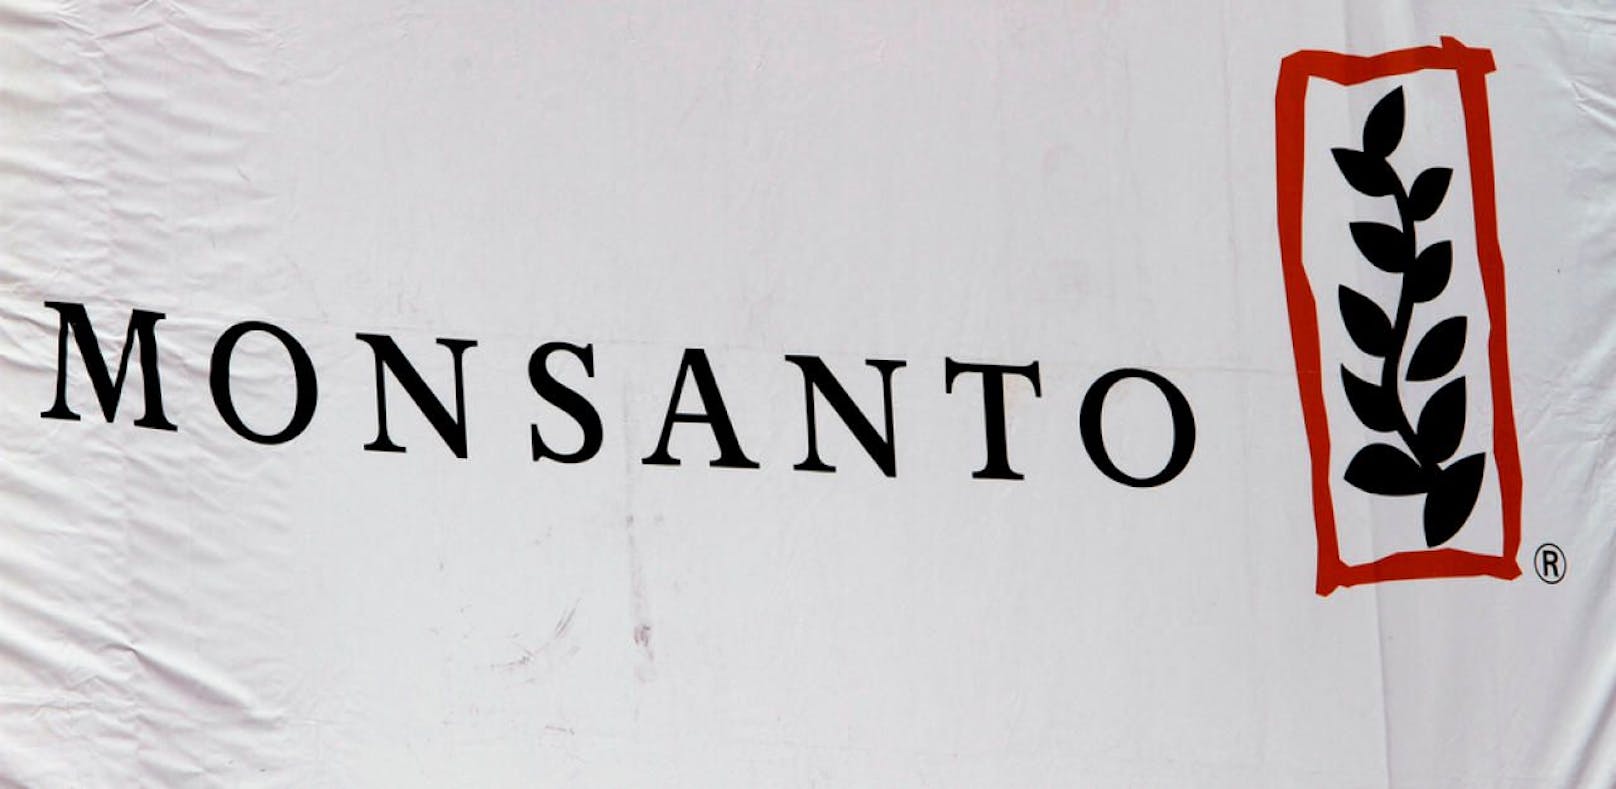 Bayer darf Monsanto kaufen, EU stimmt zu